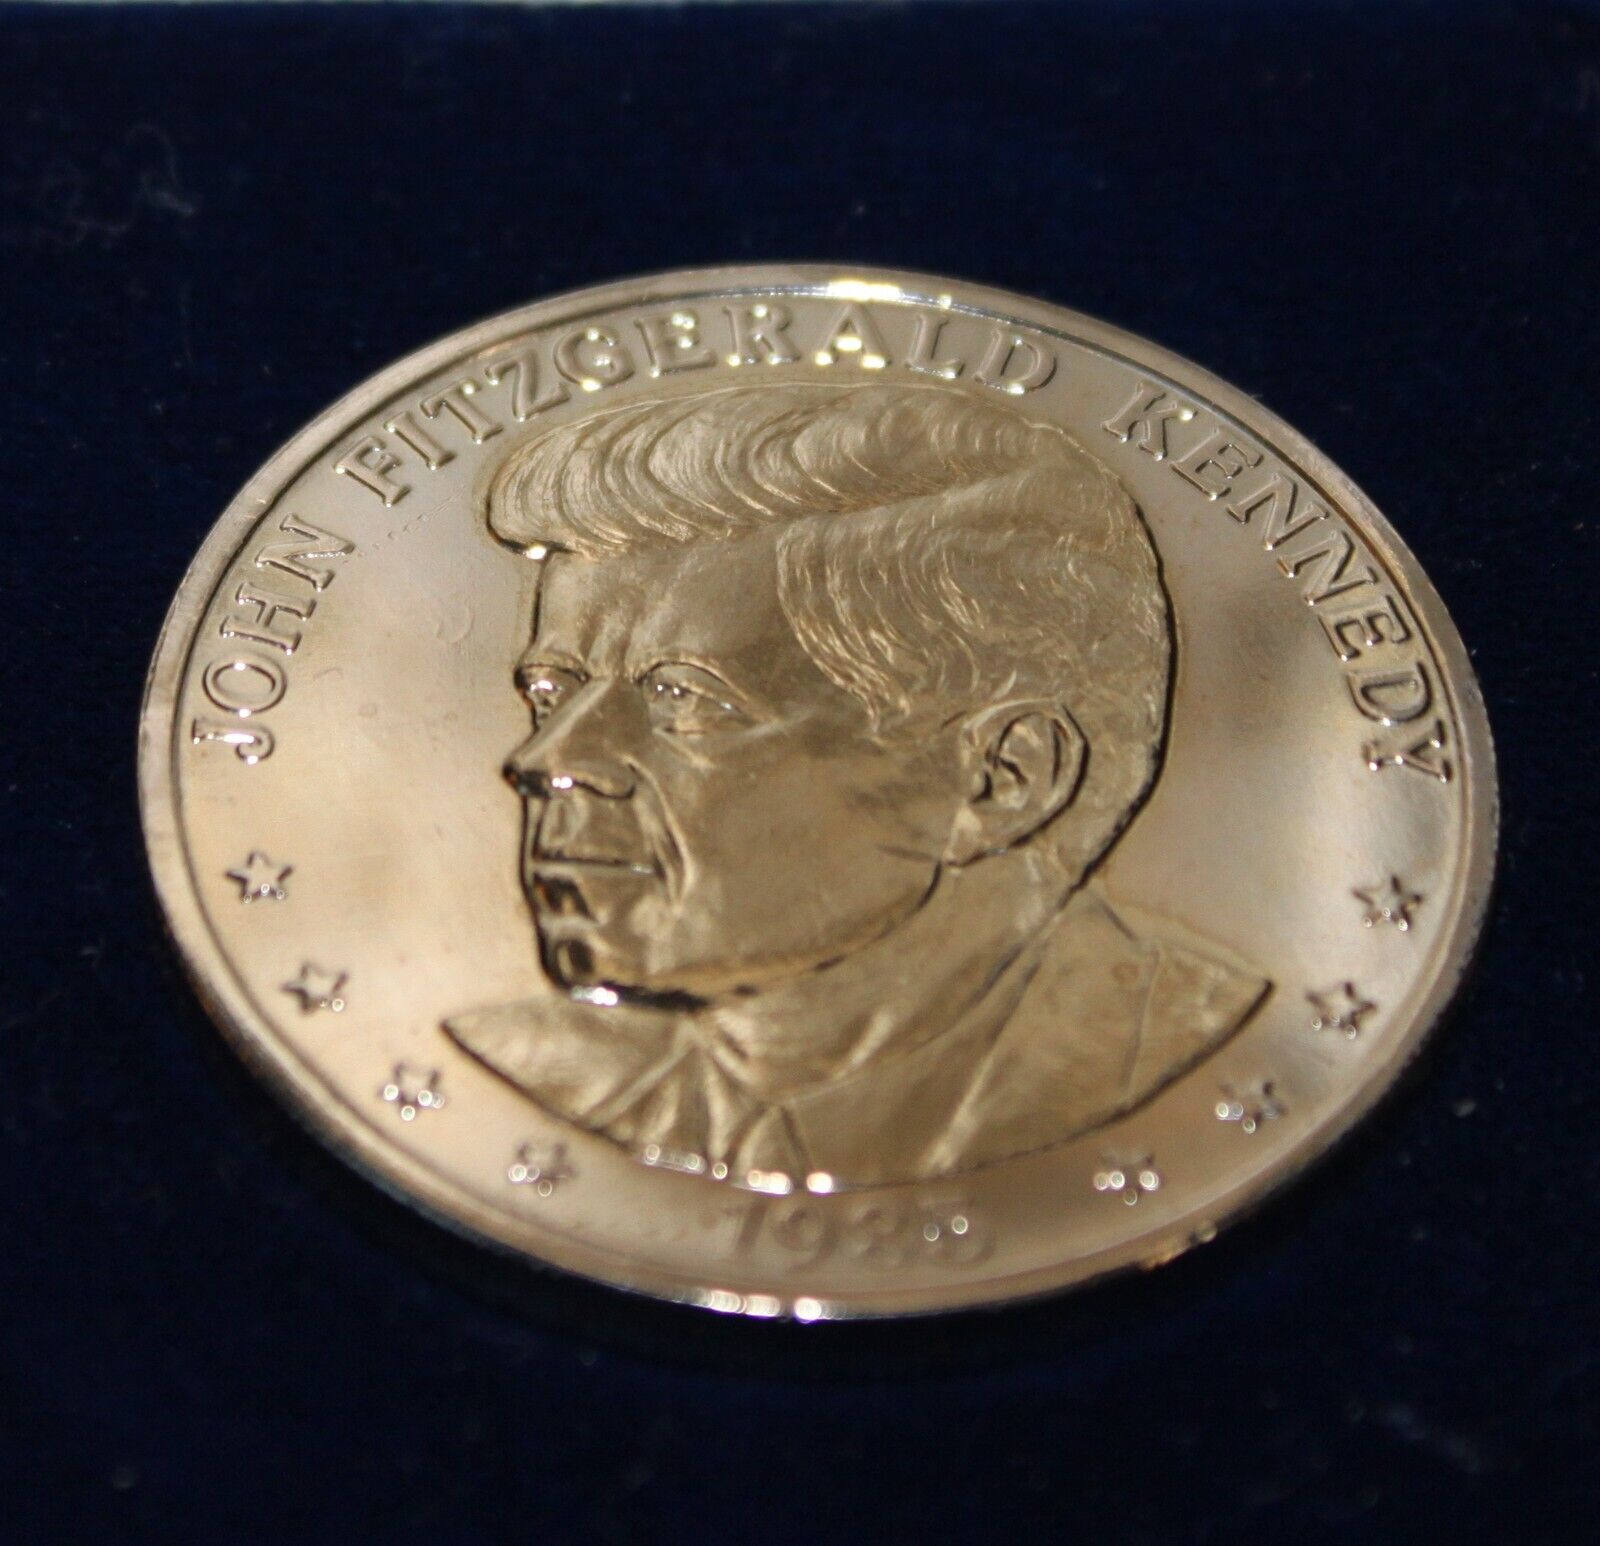 1960-1985 John F Kennedy 25th Anniversary Double Eagle Commemorative Coin